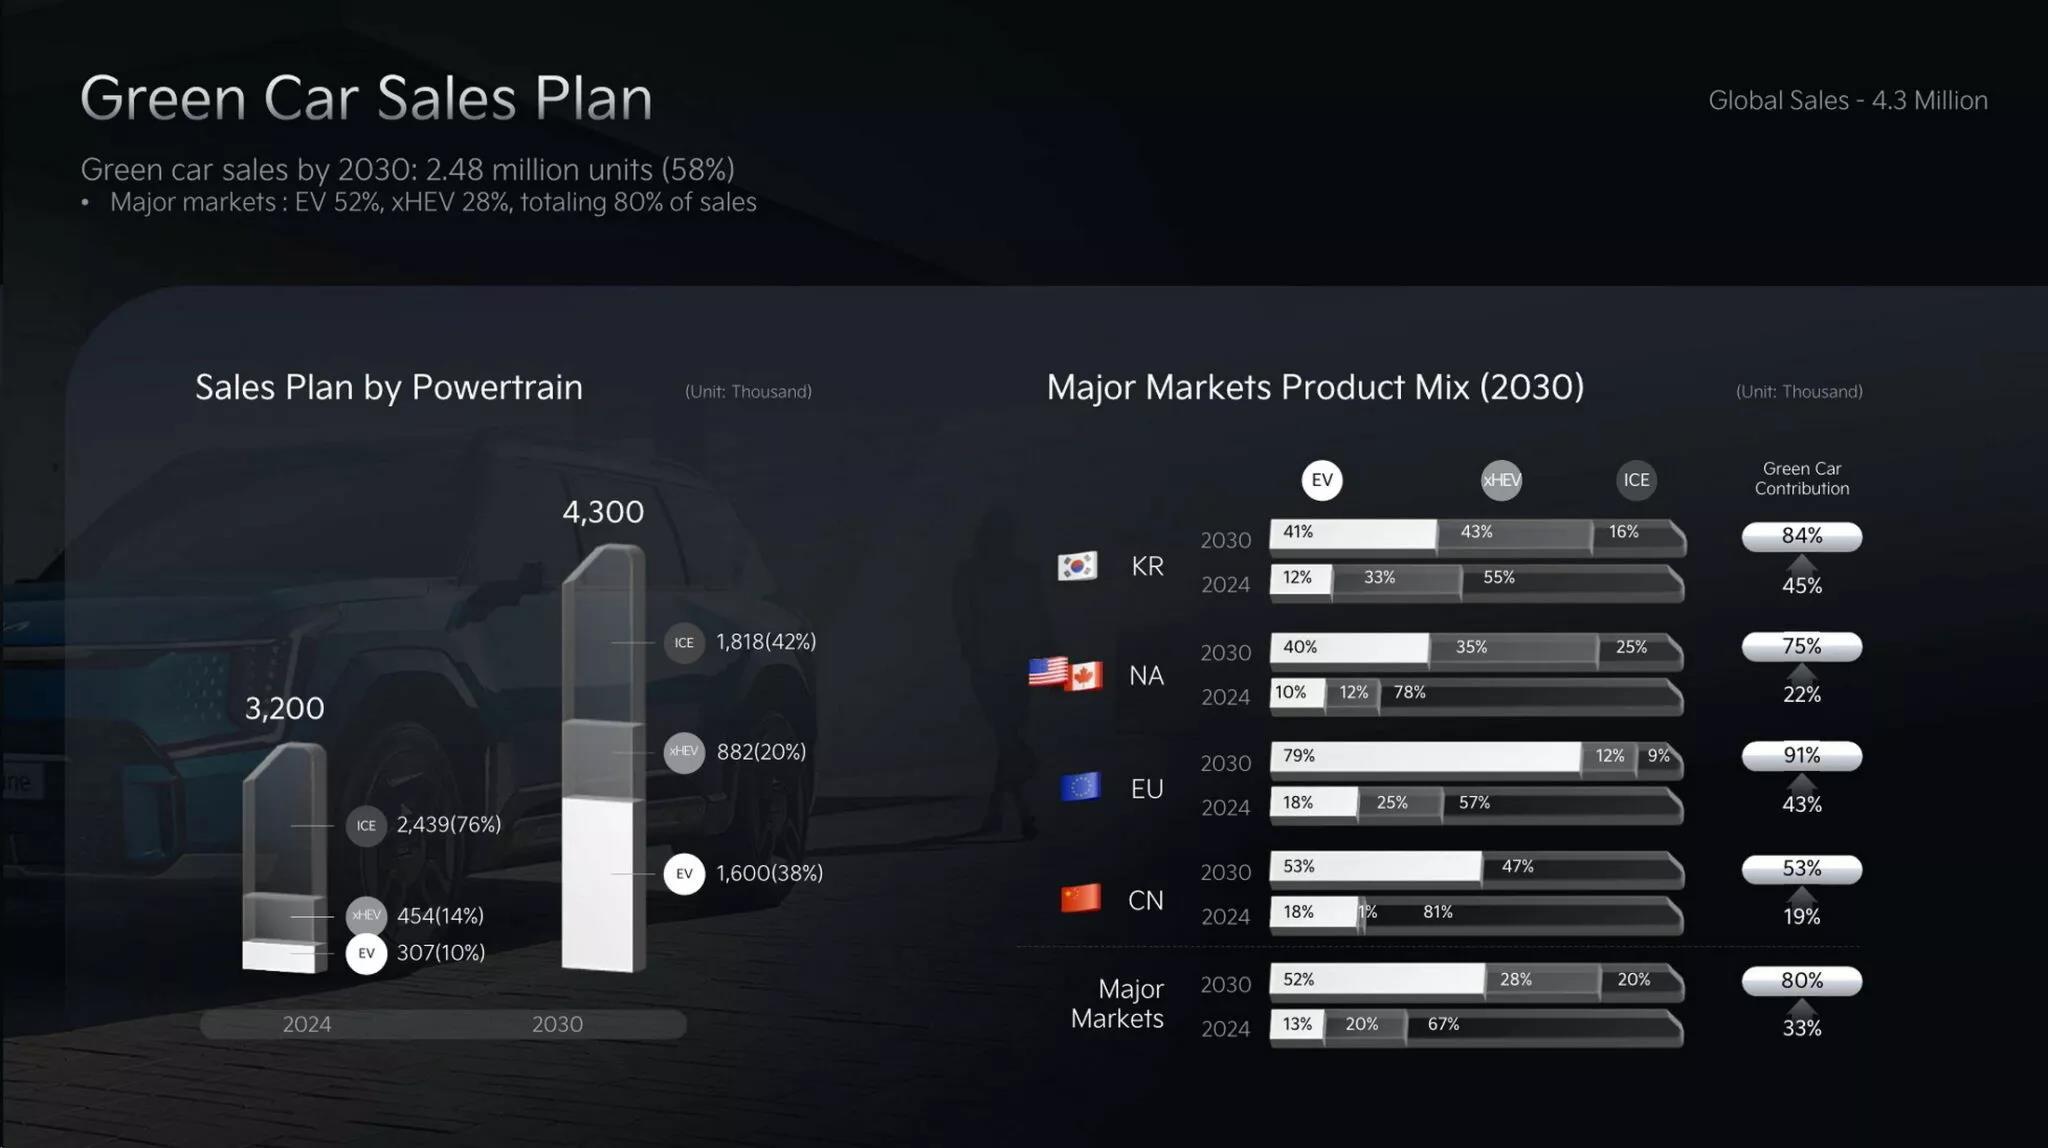 Kia 公布未来产品规划，放眼2027年前推15款纯电动车型